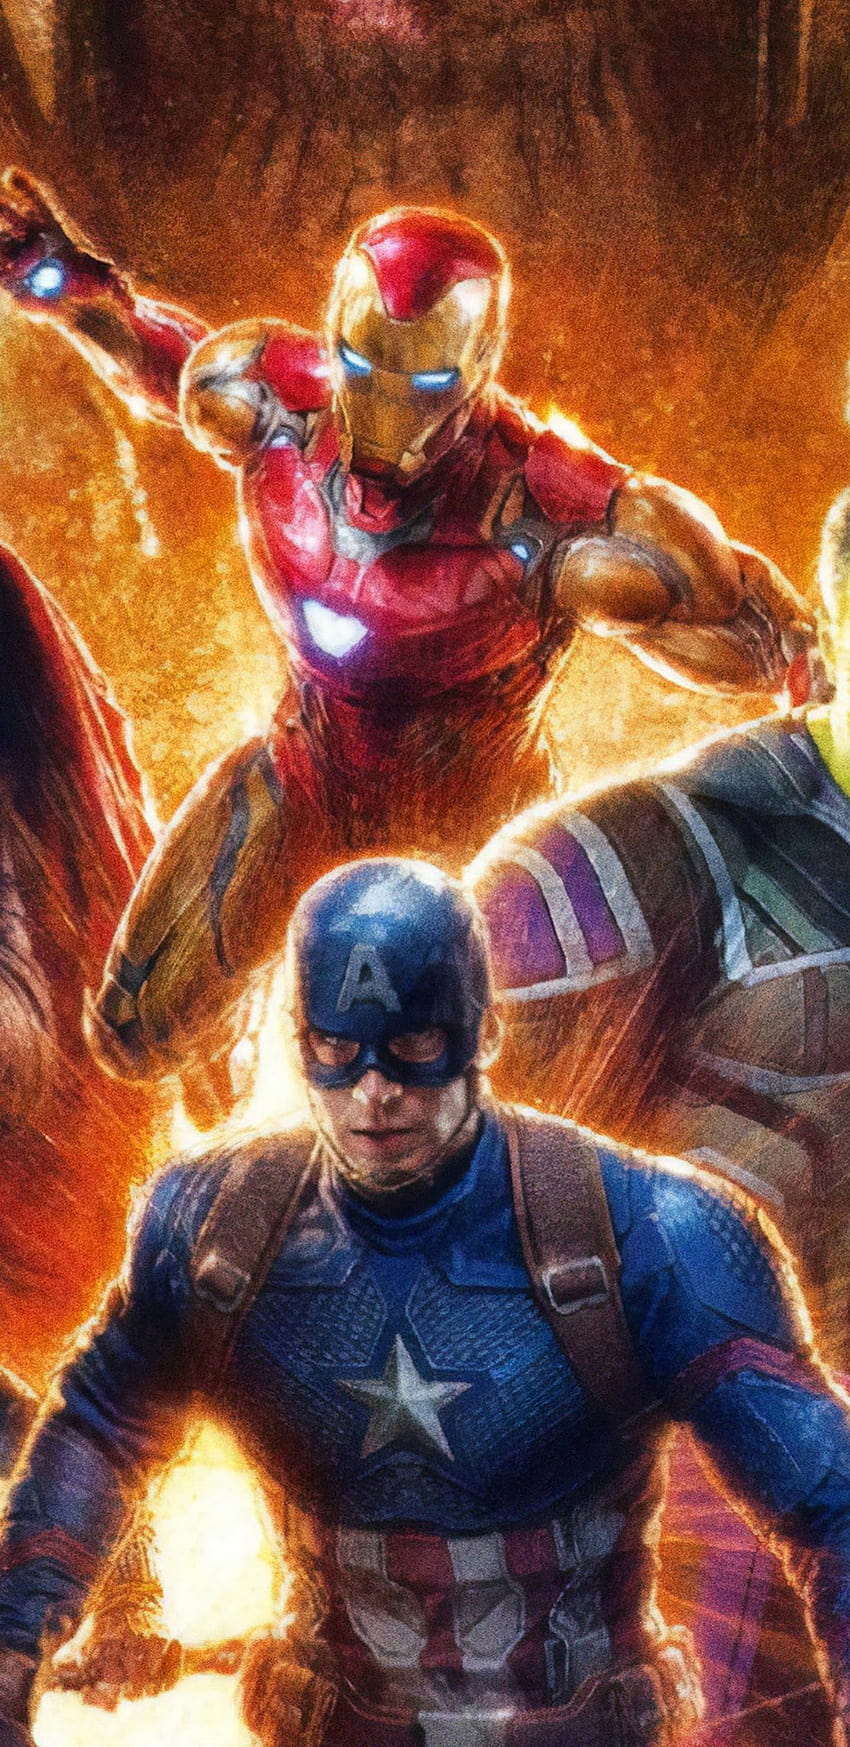 Avengers: Endgame Iron Man Captain America, avengers endgame iron man  iphone HD phone wallpaper | Pxfuel